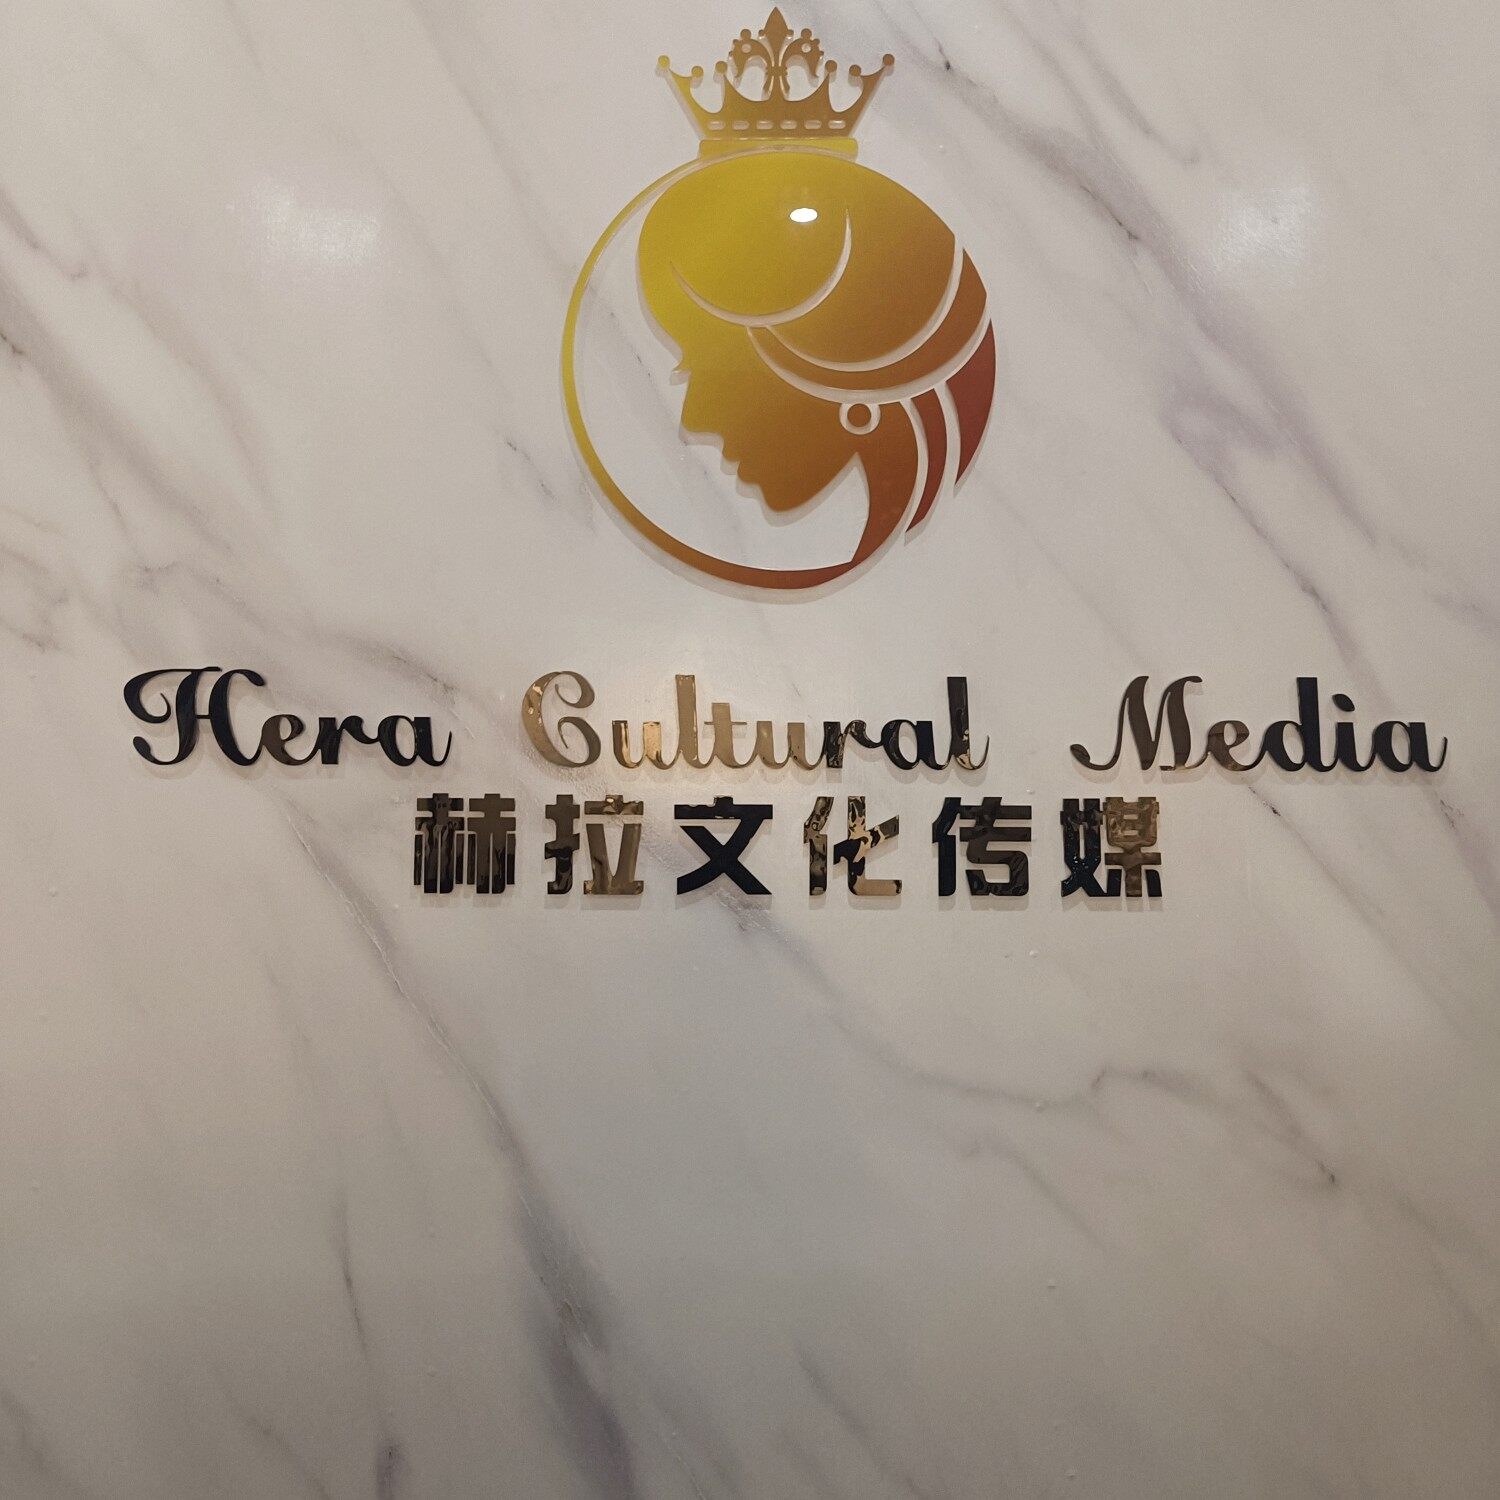 河南省赫拉文化传媒有限公司logo